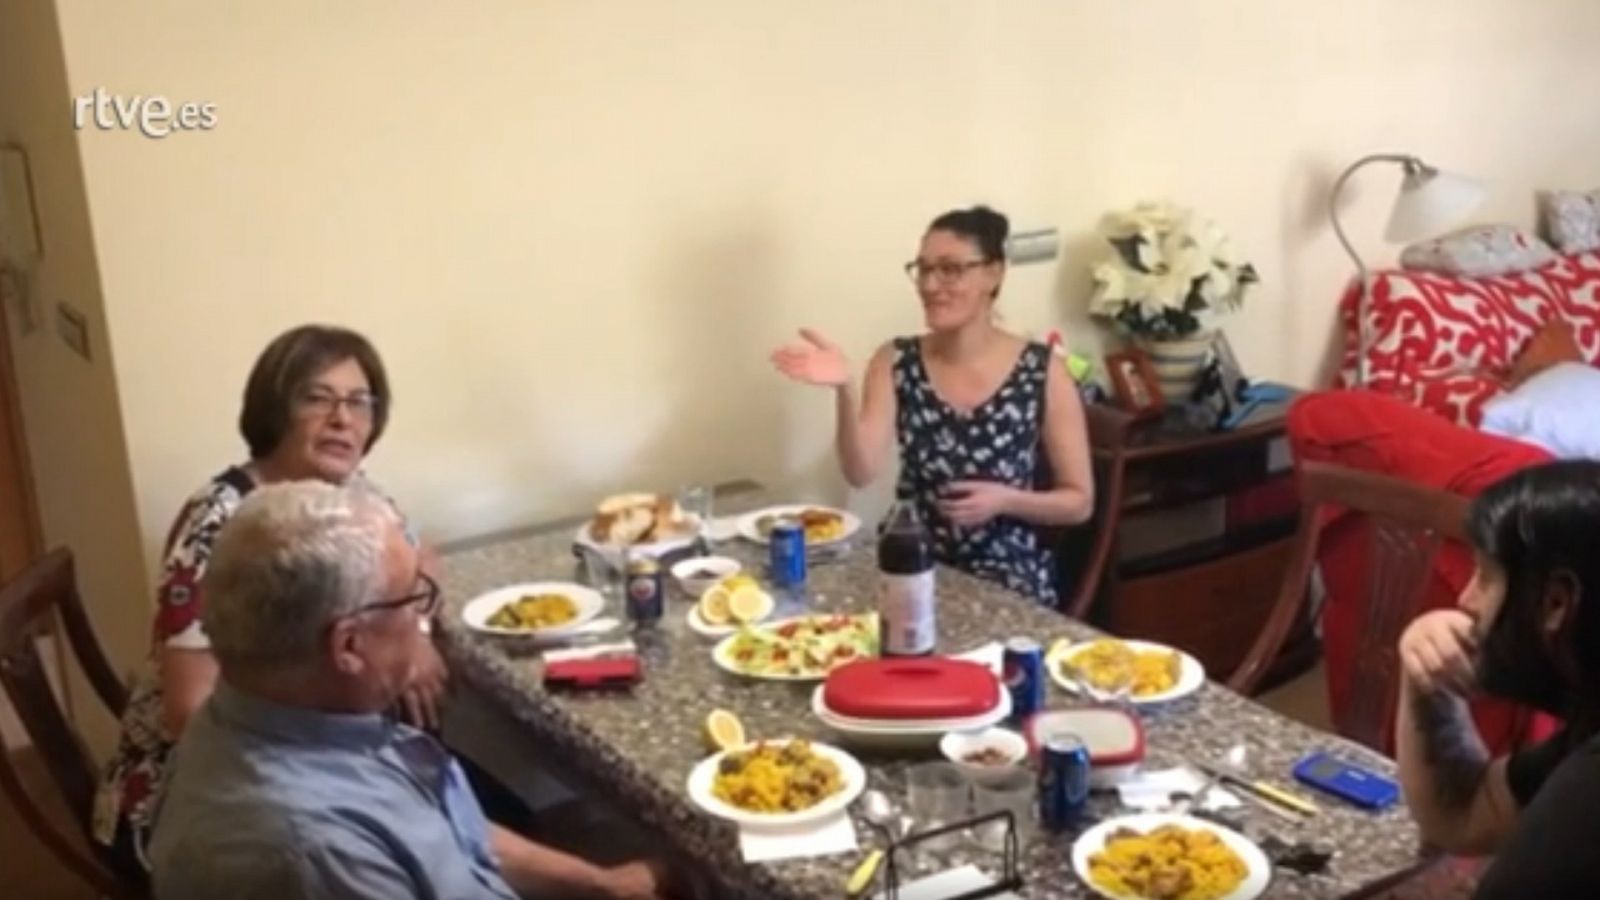 Una familia de Murcia explica mediante un vídeo cómo ha vivido su primer reencuentro tras la declaración del estado de alarma por el coronavirus. No ha habido besos ni abrazos, por precaución, pero sí han podido disfrutar de una comida juntos.